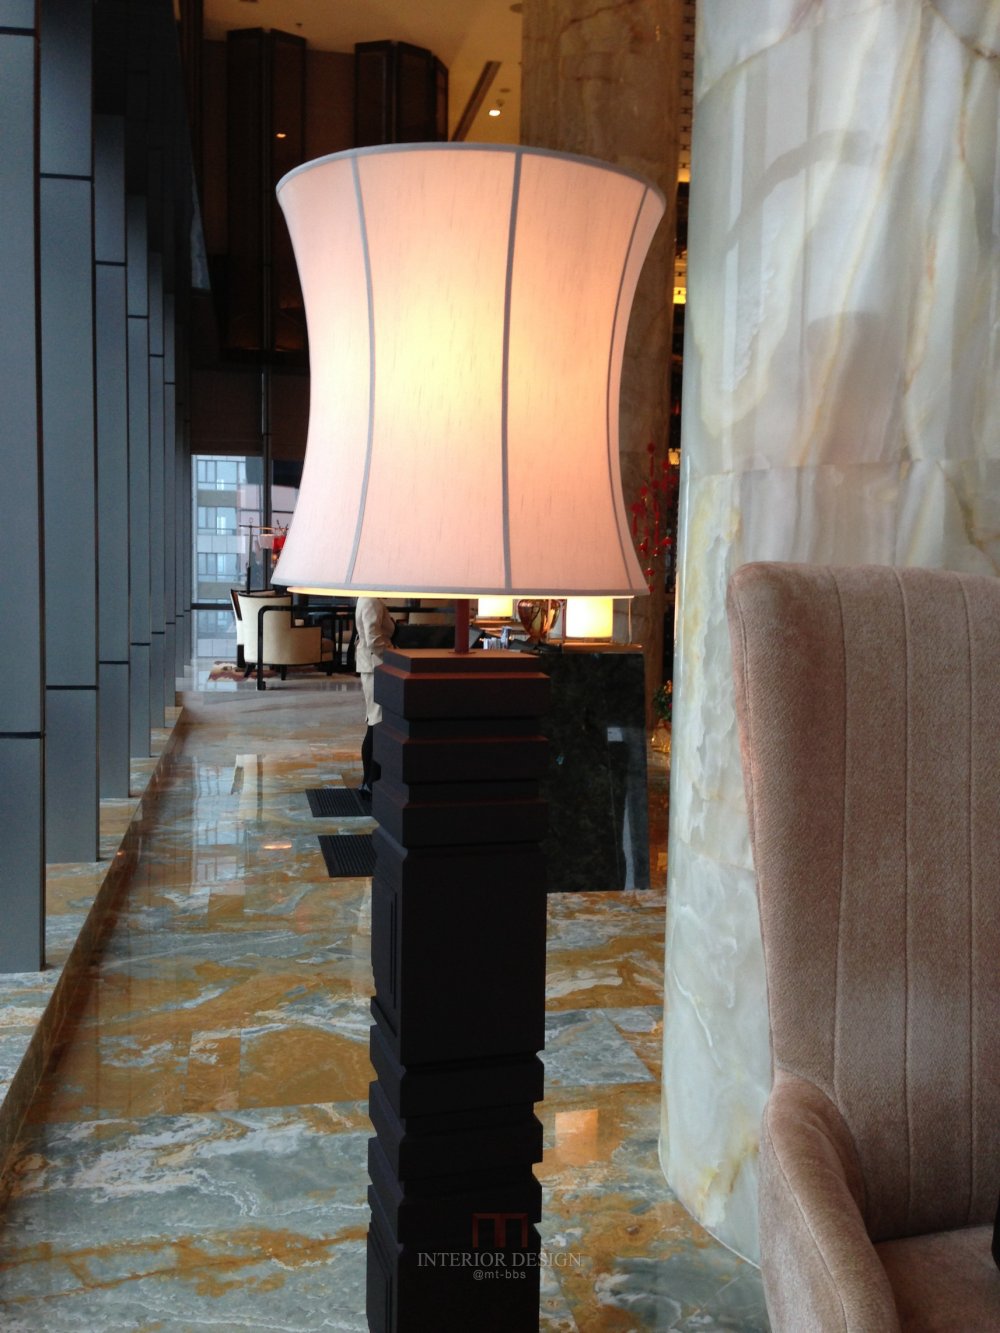 成都丽思卡尔顿酒店The Ritz-Carlton Chengdu(欢迎更新,高分奖励)_IMG_6351.JPG